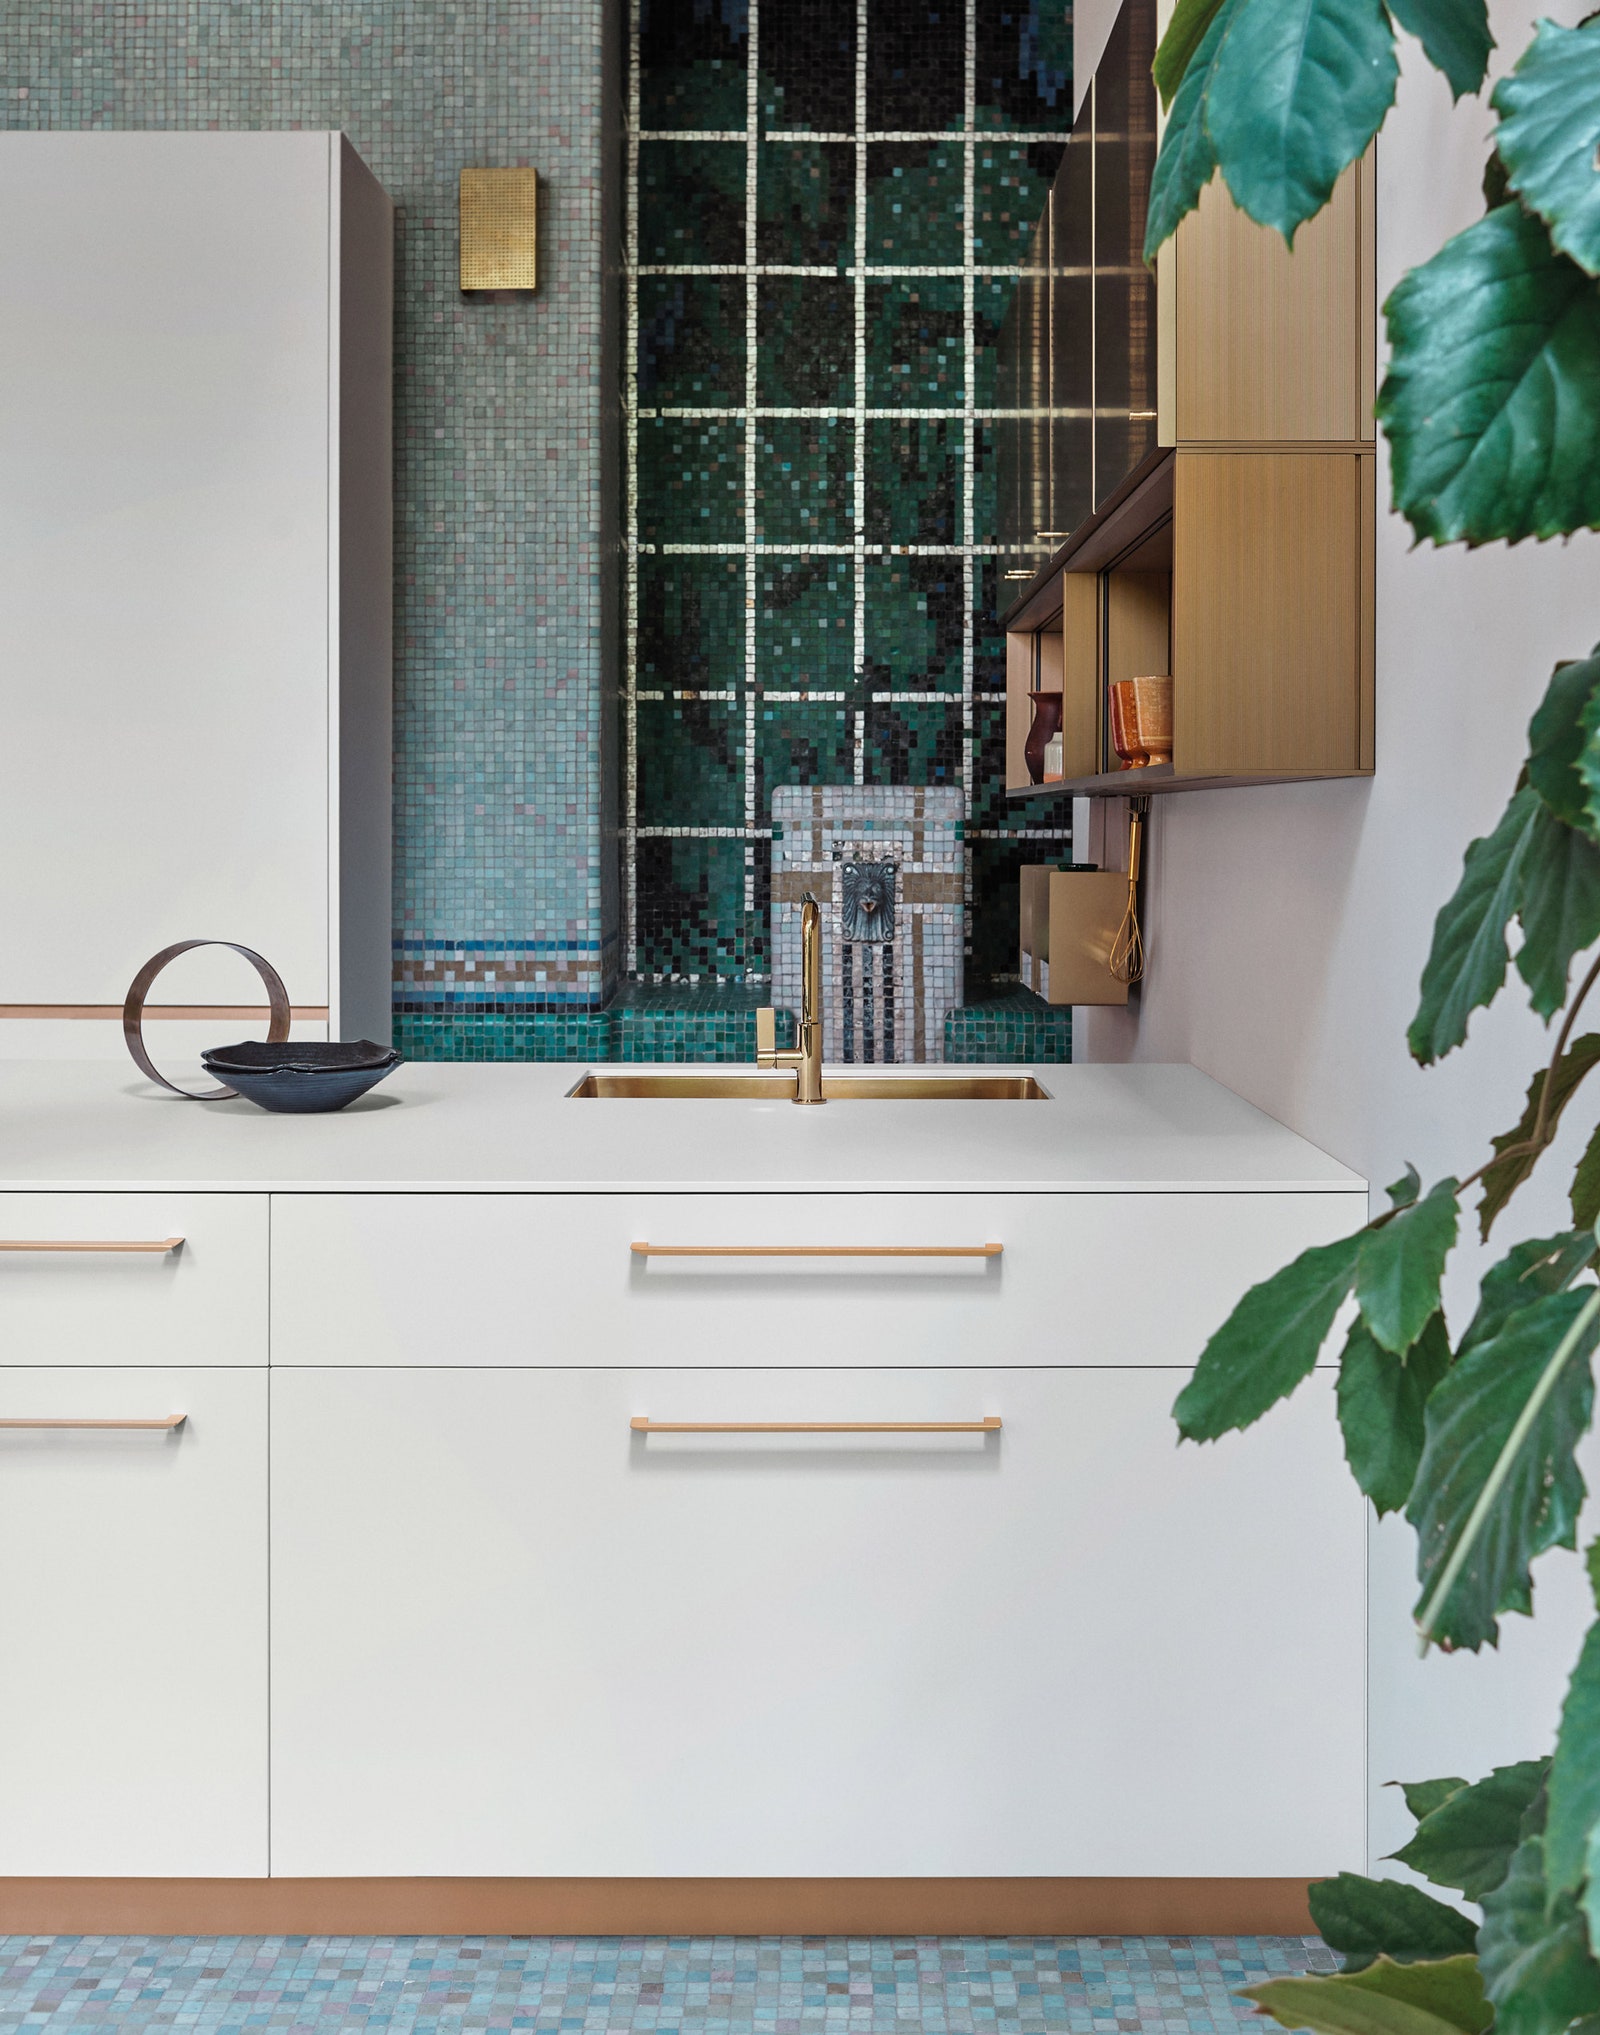 Кухня в стиле минимализм идеи дизайна и интерьеров с фото